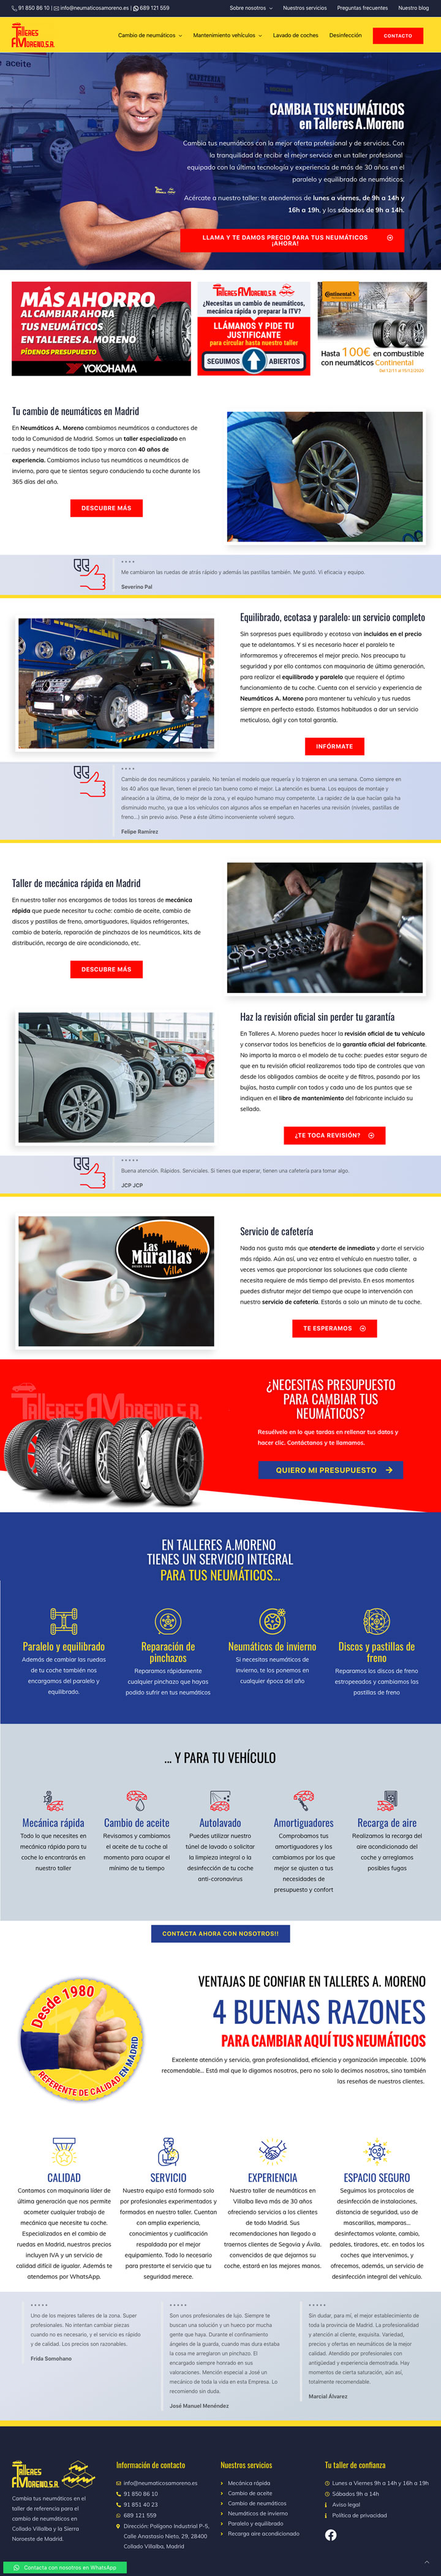 Talleres A. Moreno. Creación y diseño web neumaticosamoreno. Pagina de inicio del sitio web.